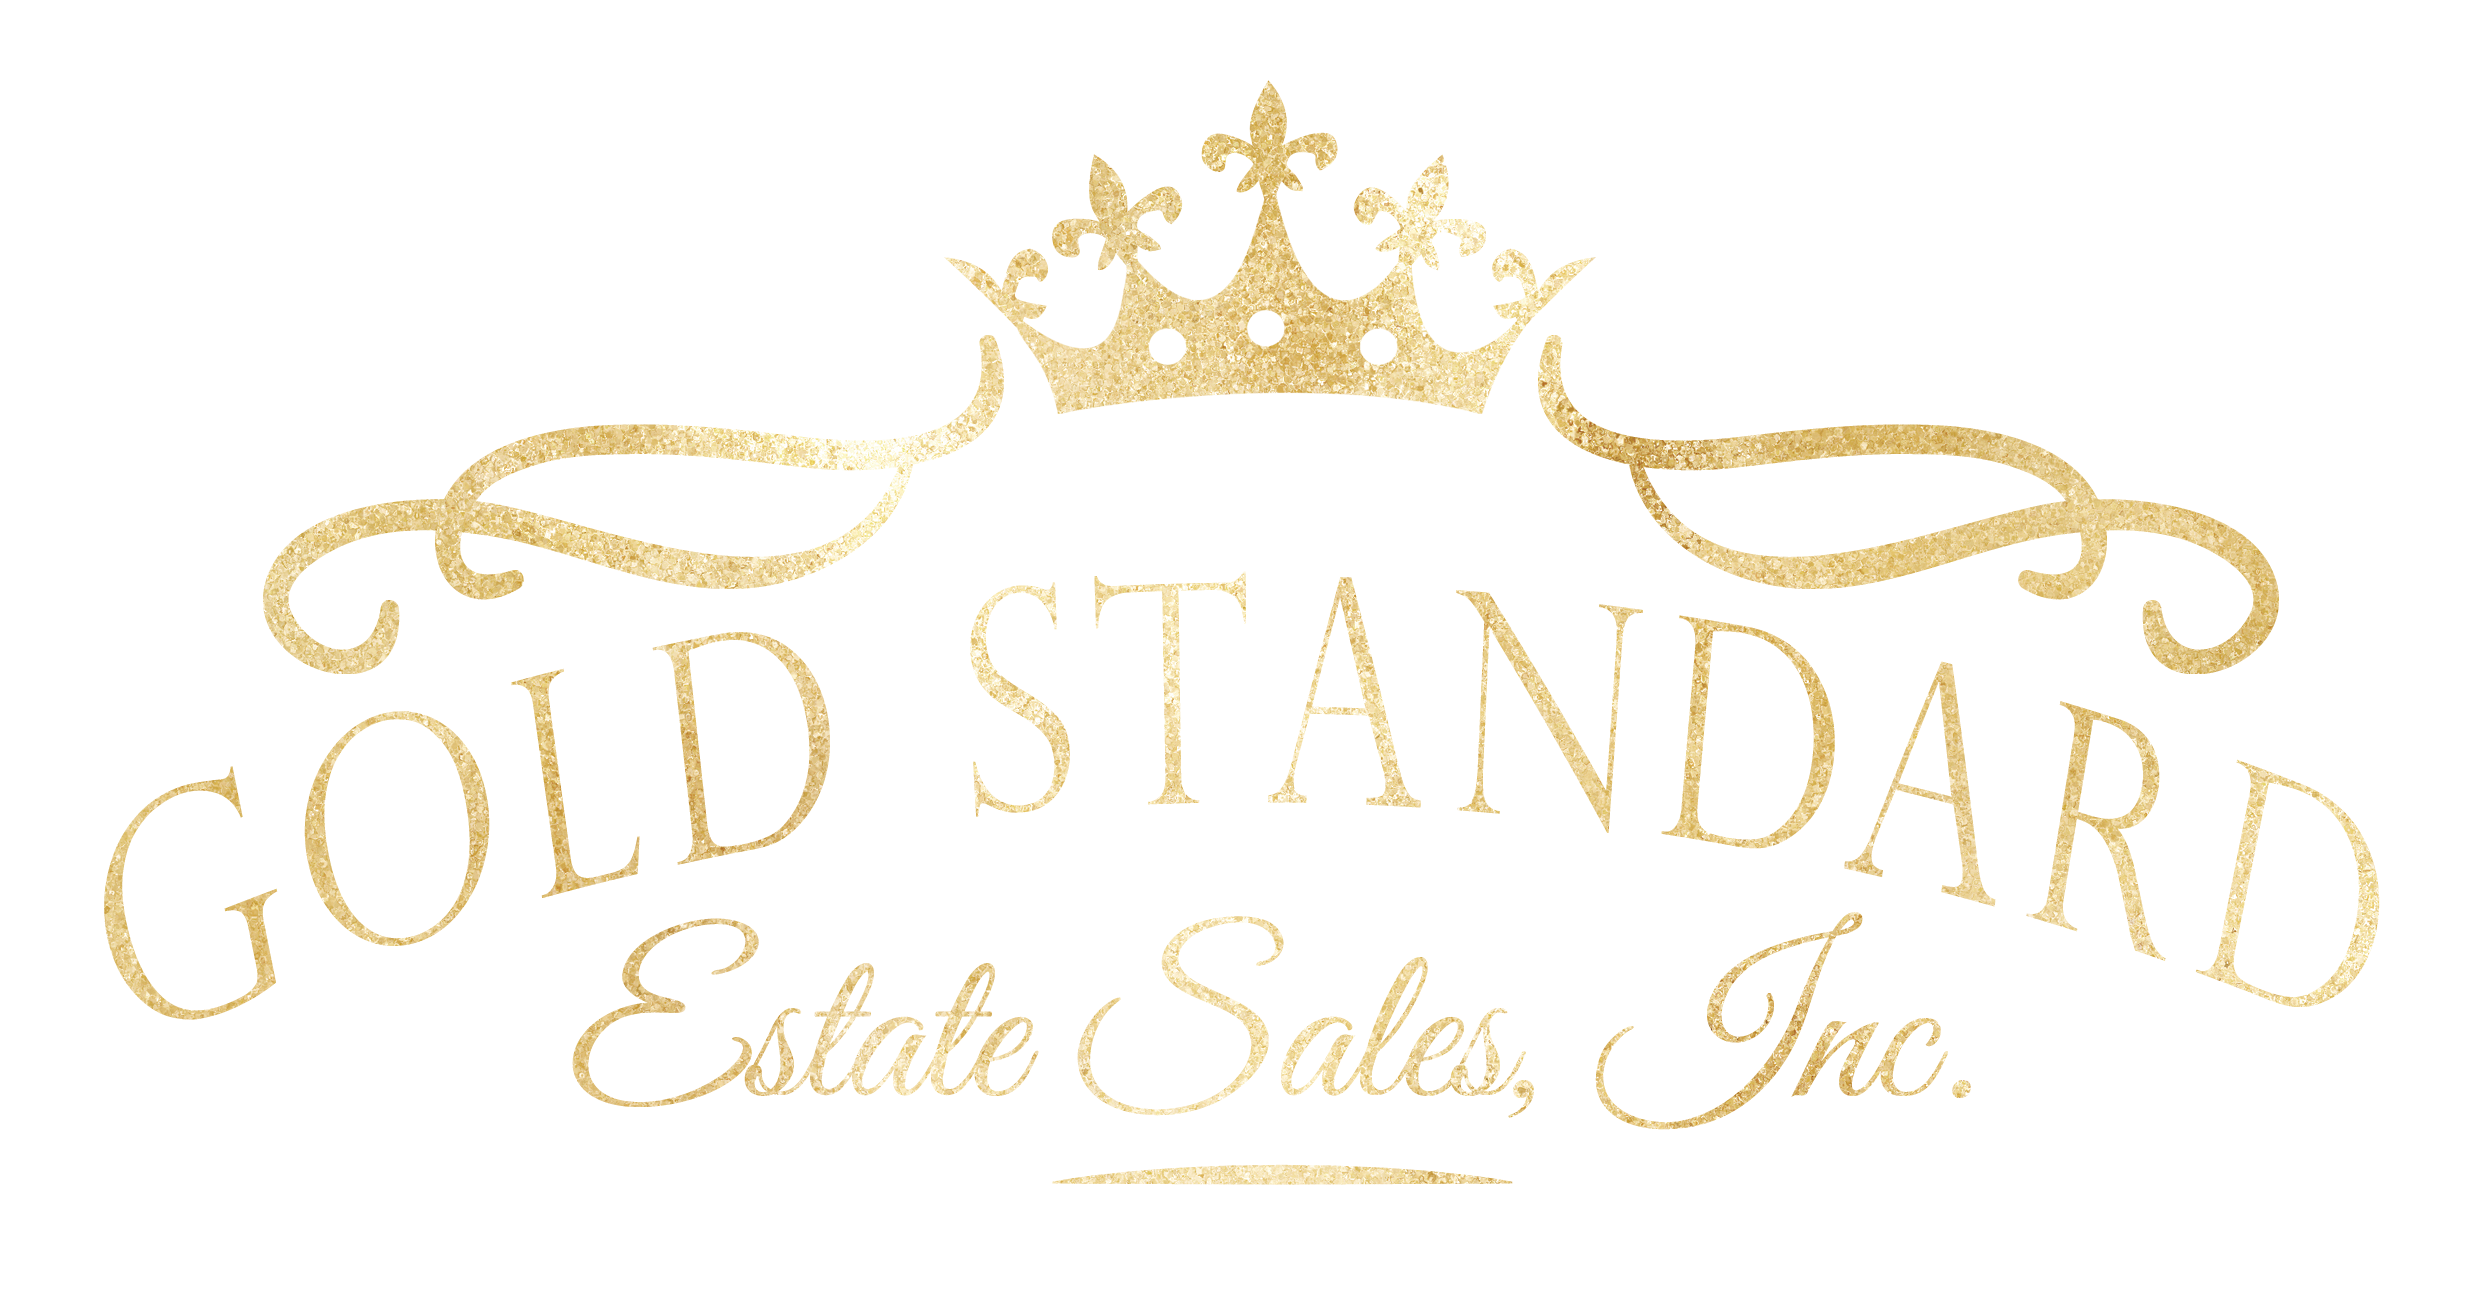 Gold Standard Estate Sales